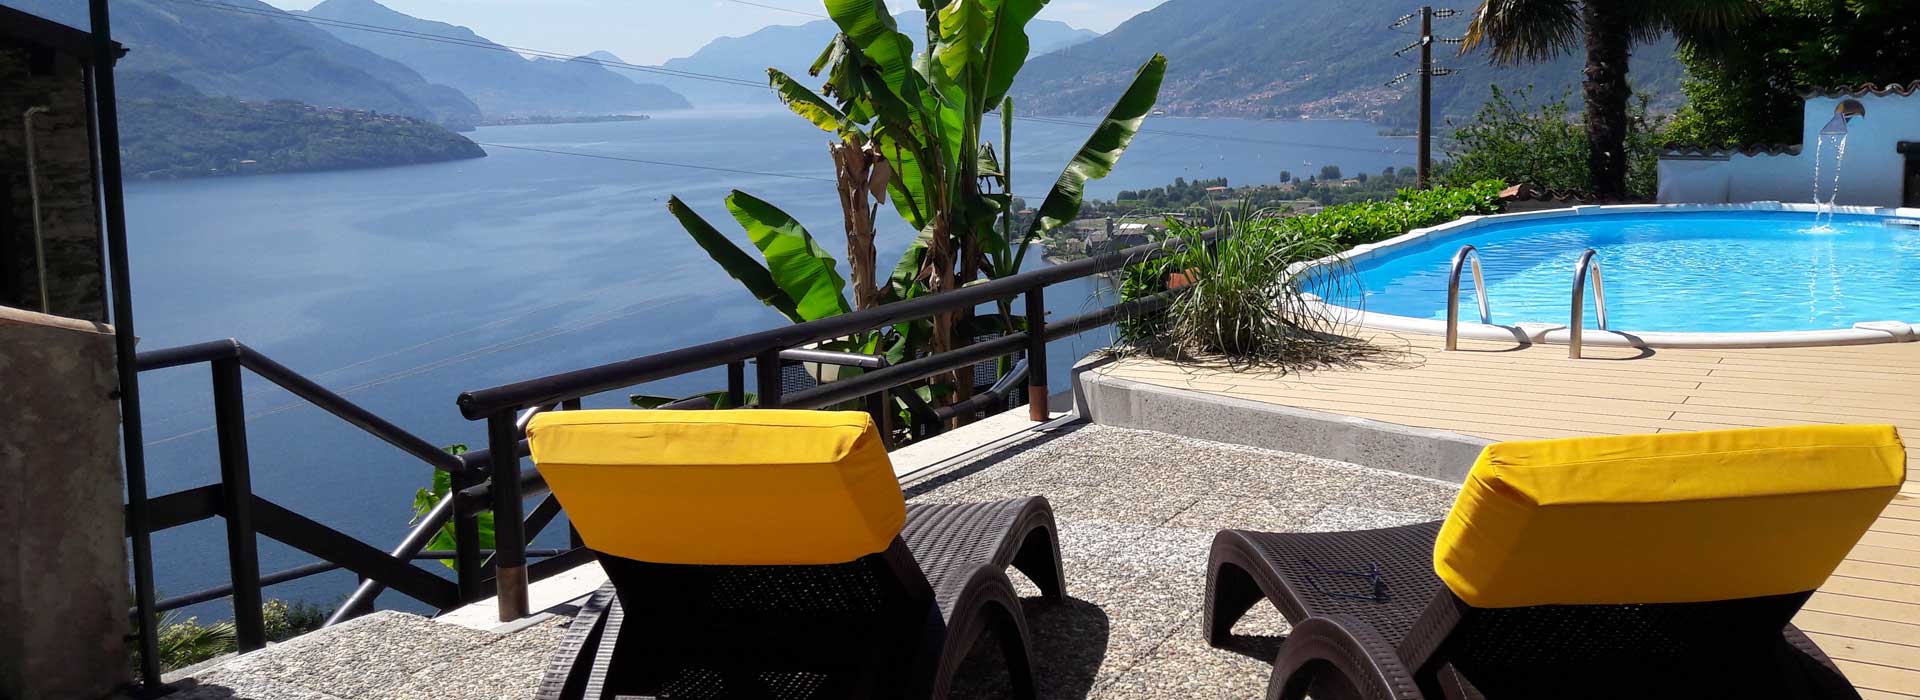 Apartments Casarina Lake Como